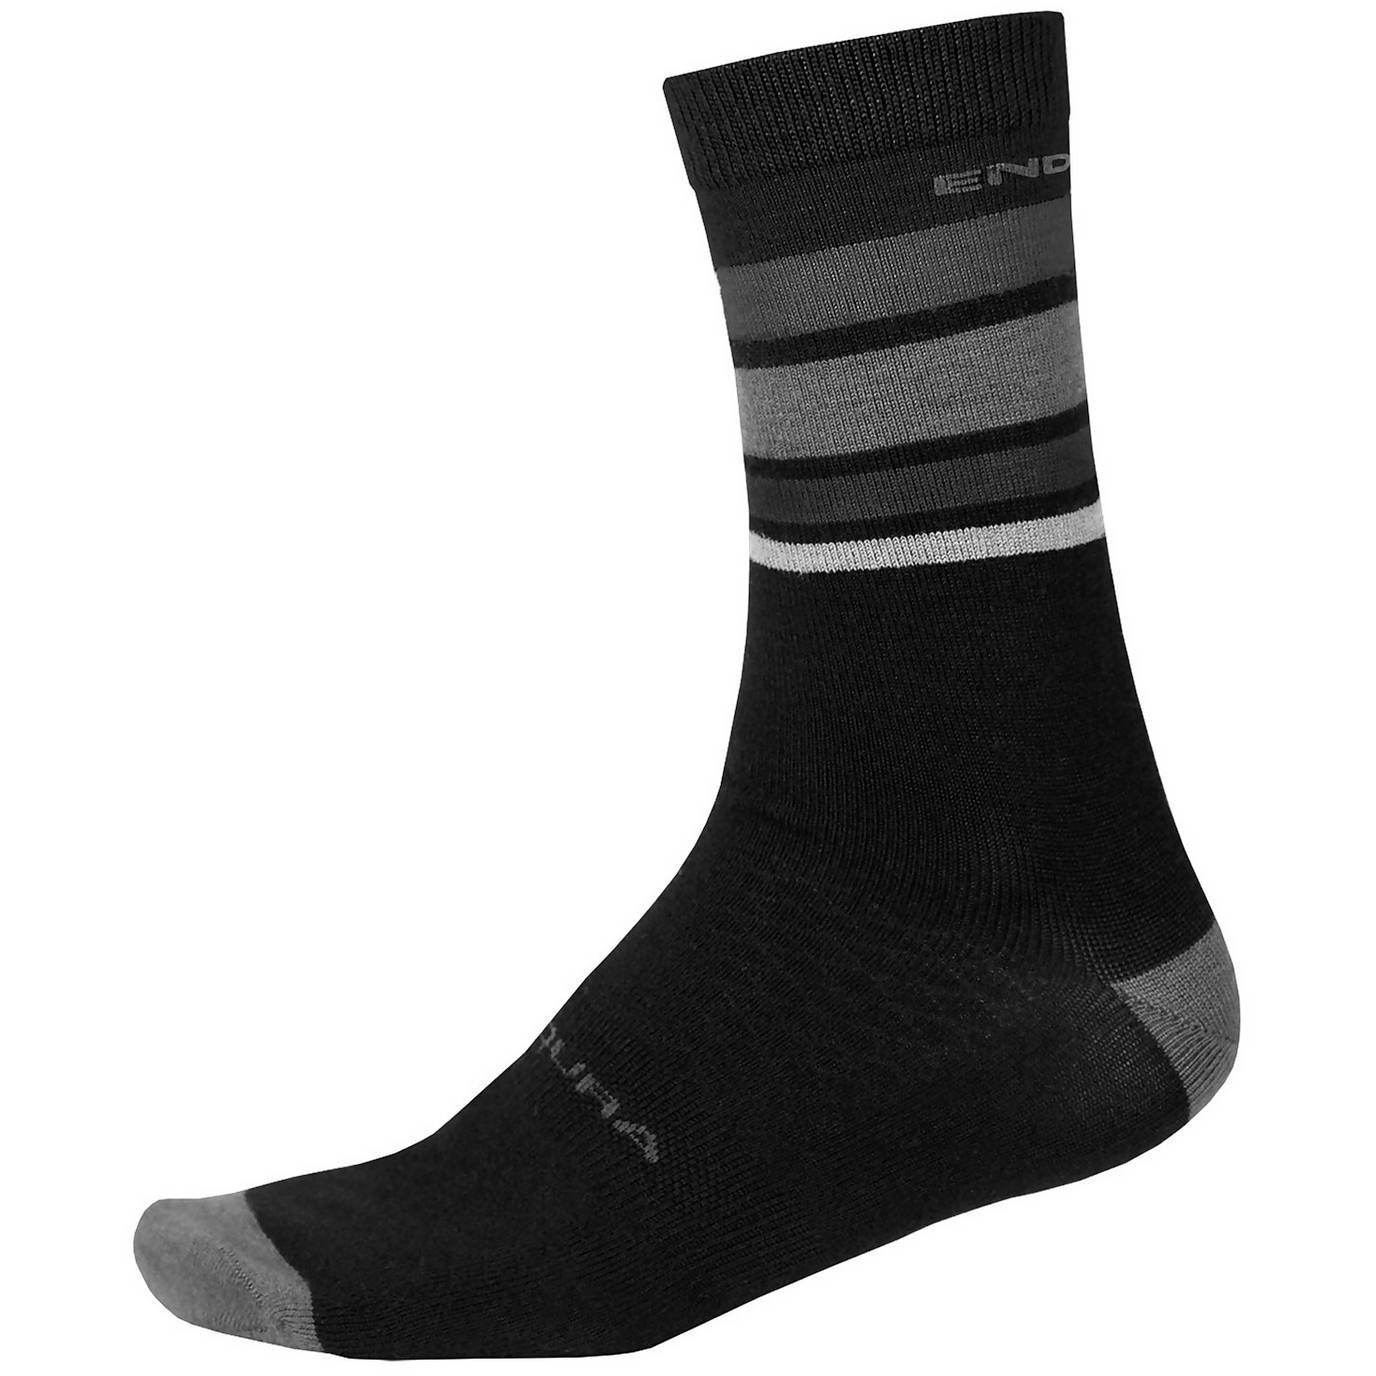 Produktbild von Endura BaaBaa Merino Stripe Socken mittellang - matt schwarz